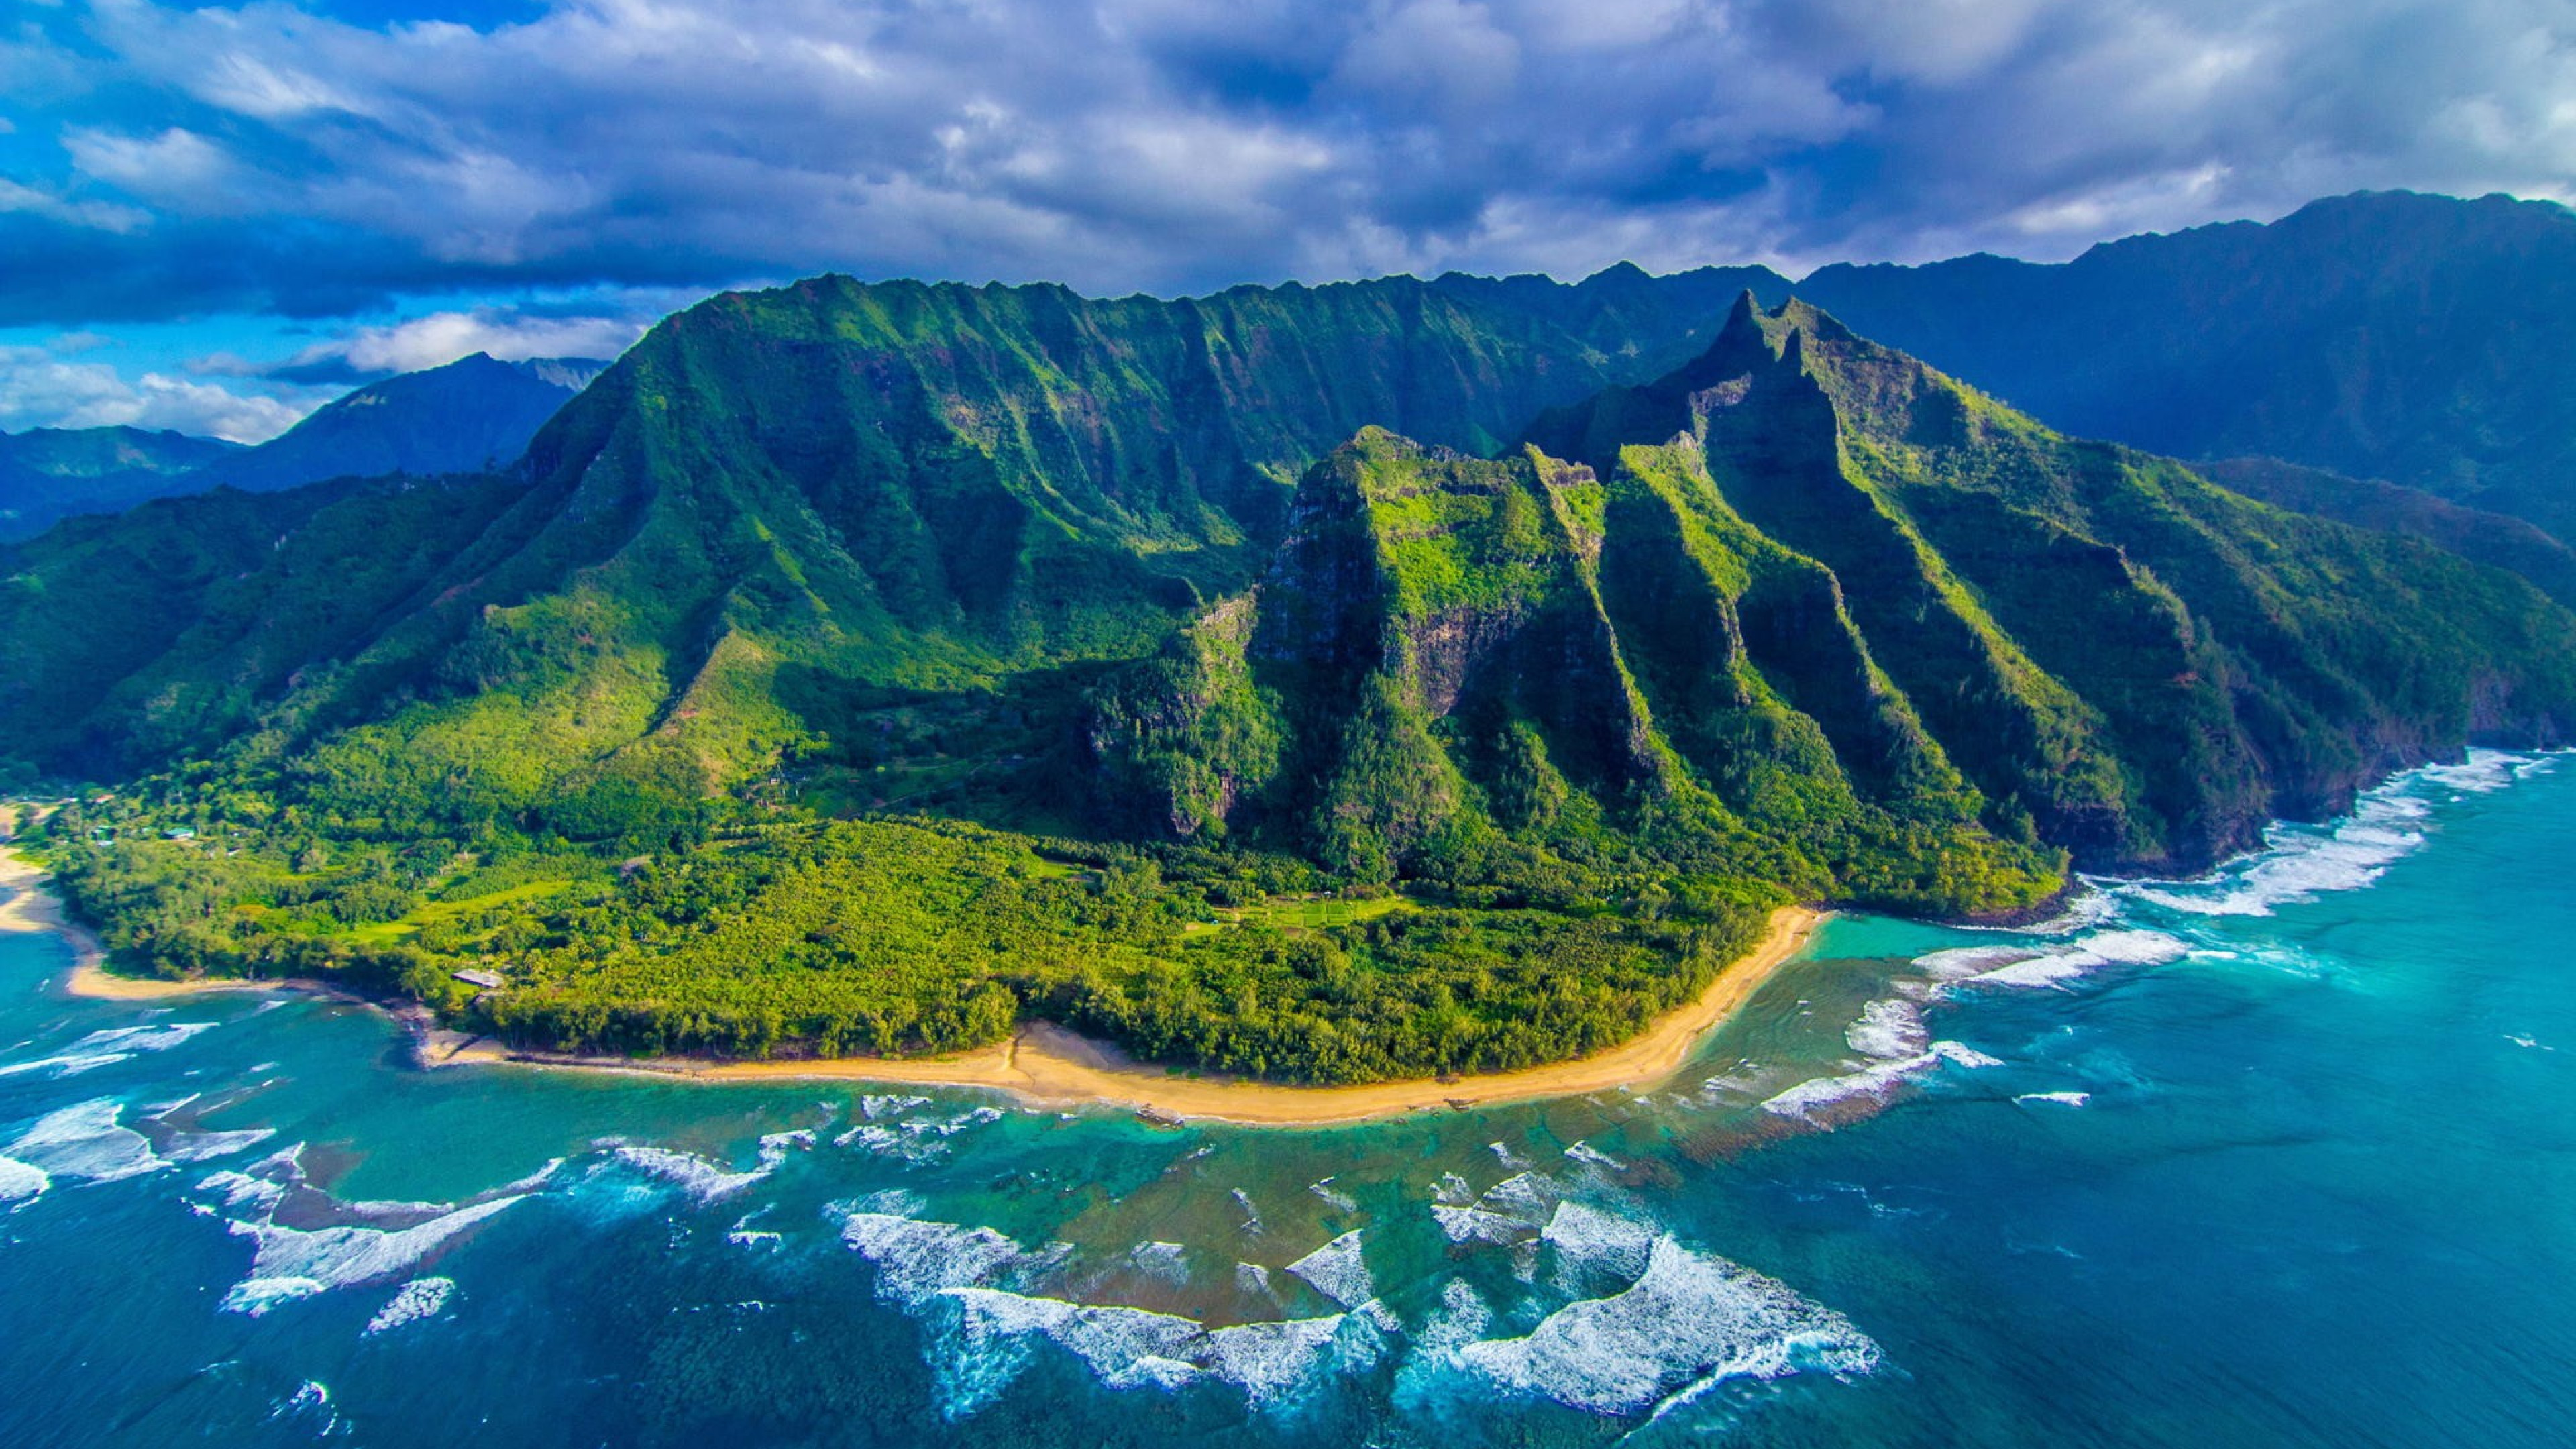 Hawaii desktop backgrounds pictures